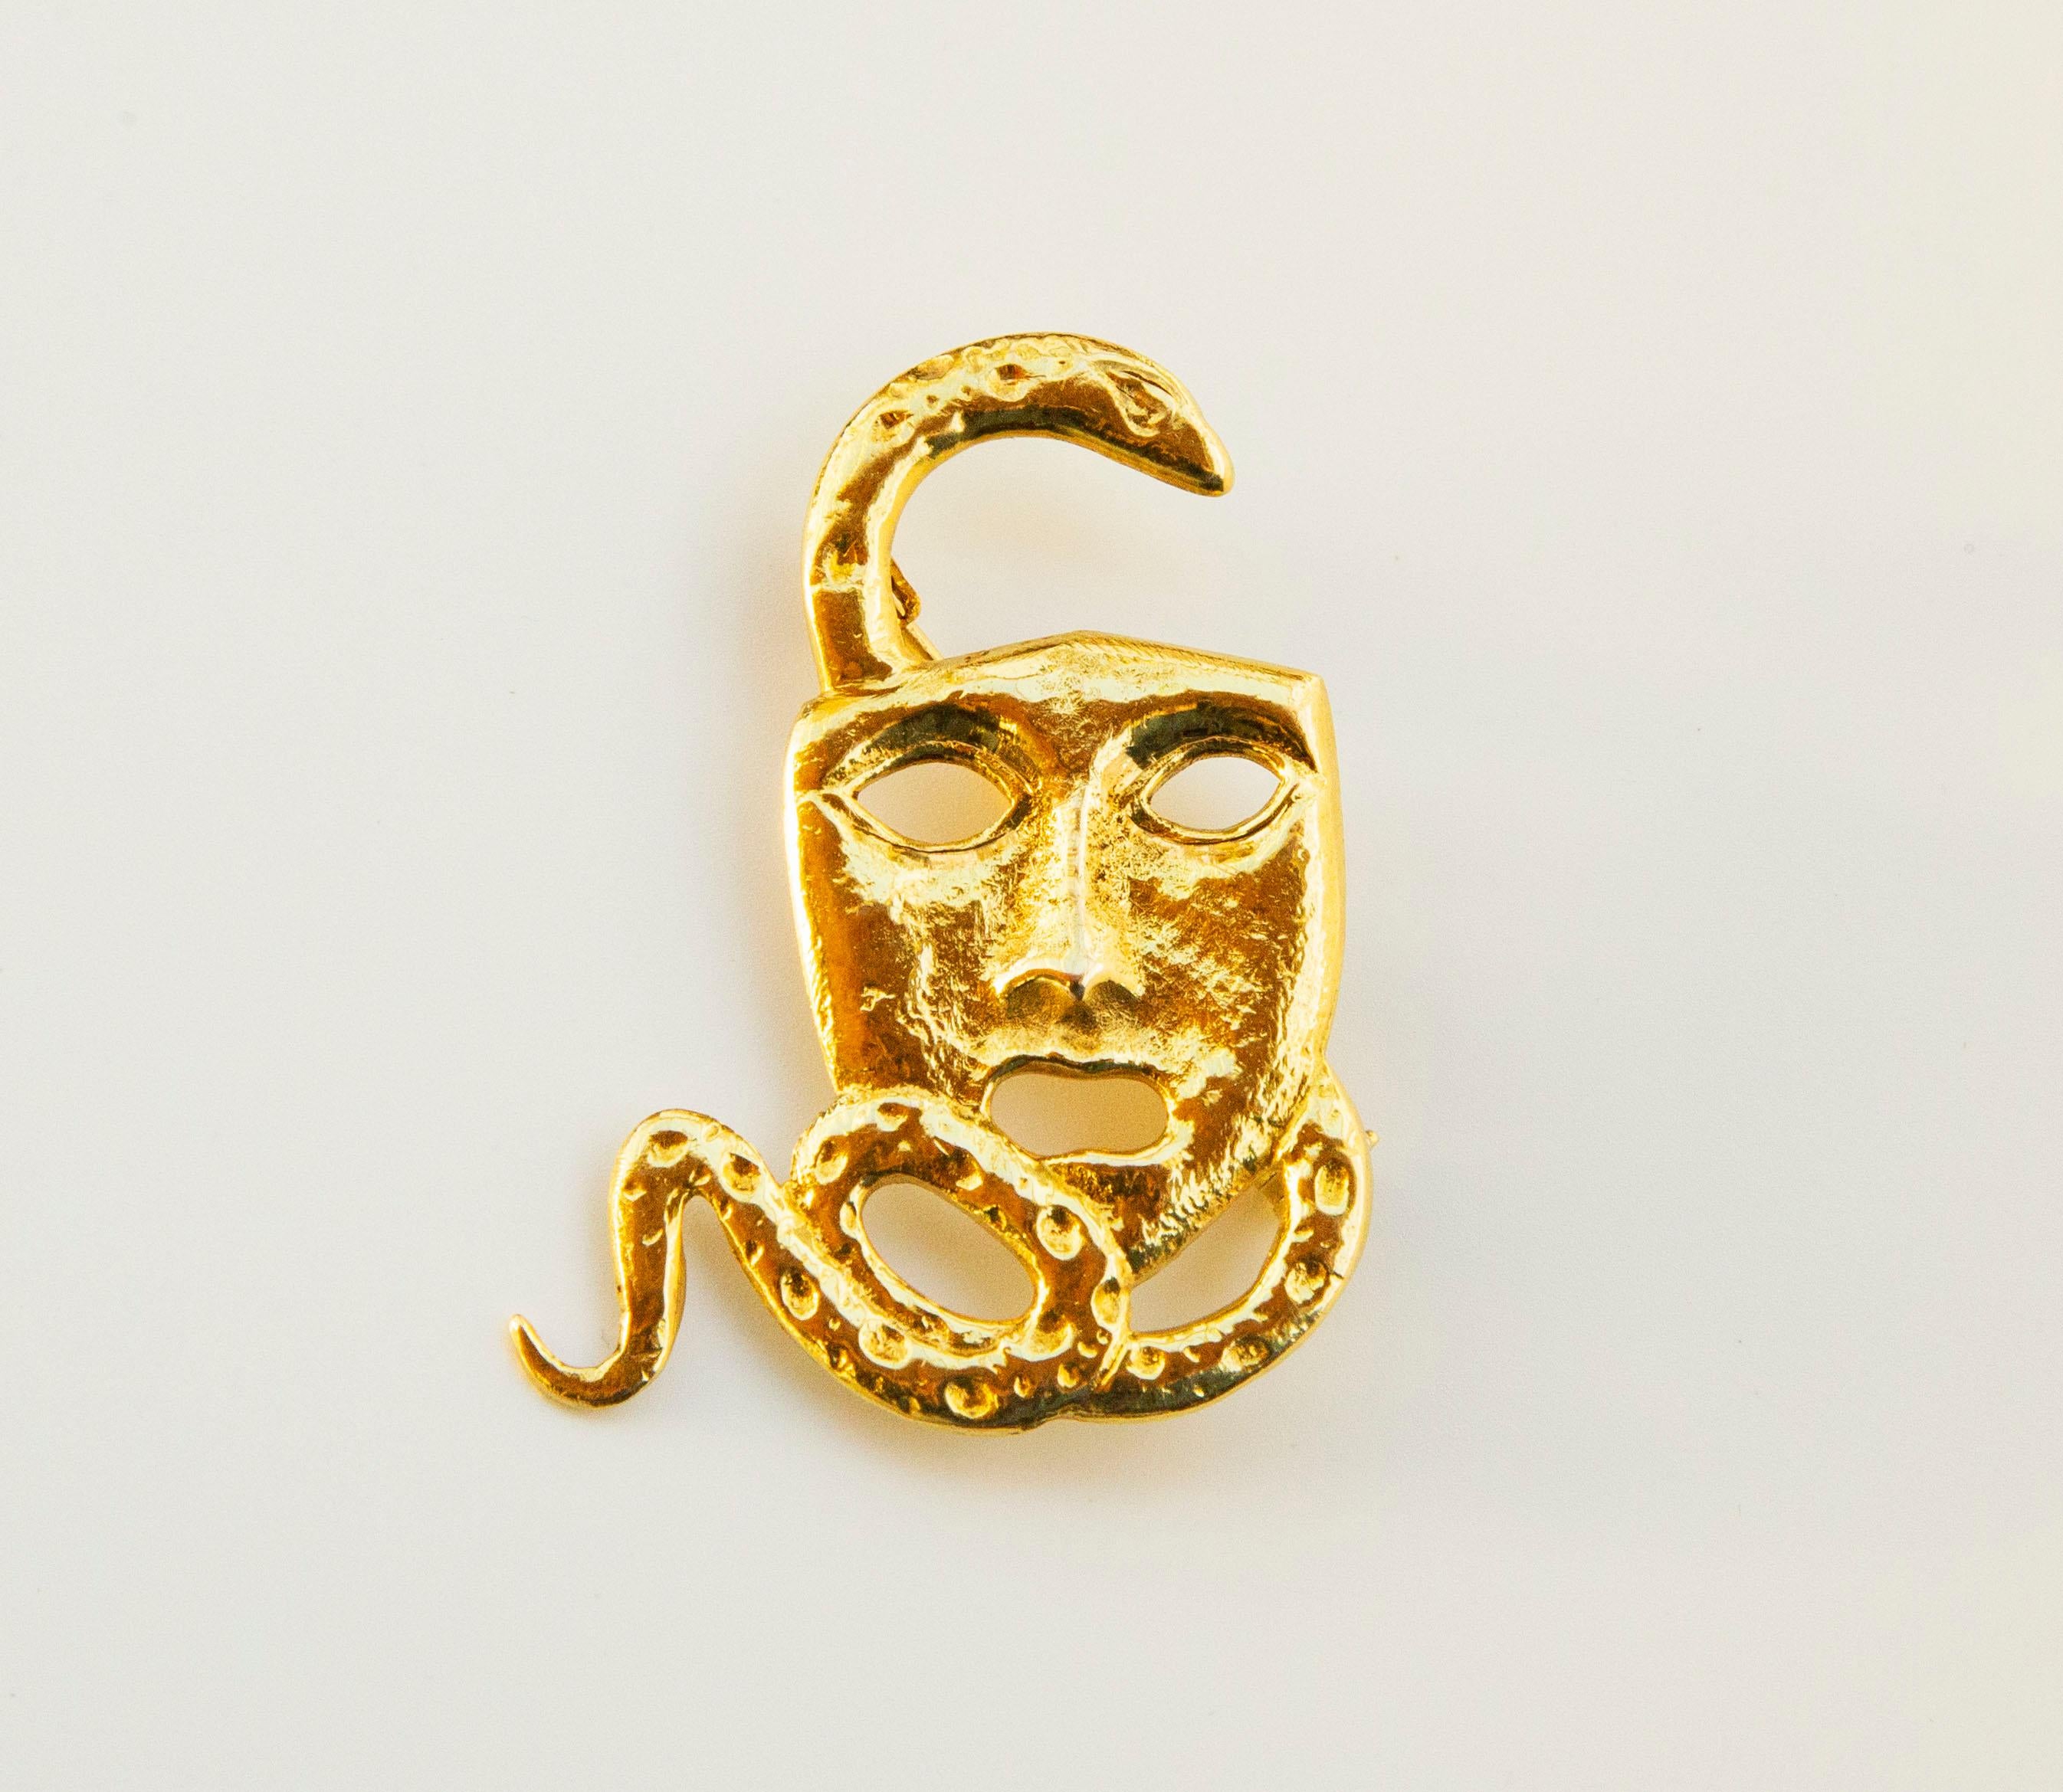 18 Karat Gelbgold in Form einer Schauspieler-/Drama-/Theatermaske mit einer Schlange. Die Vorderseite der Maske ist strukturiert und gehämmert, während die Rückseite der Maske glatt ist. Die Brosche wurde im späten 20. Jahrhundert in den